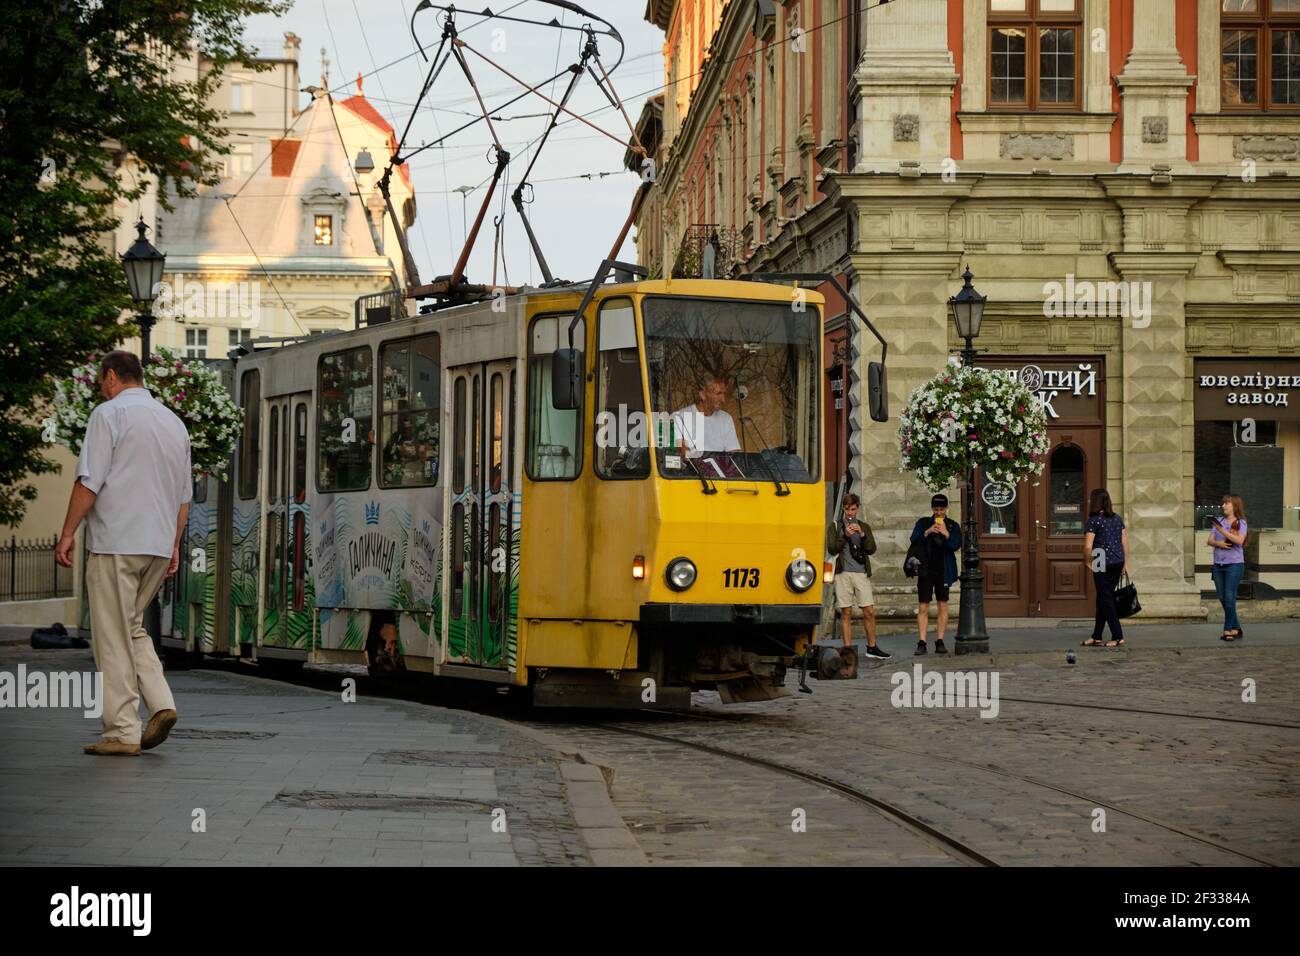 Tram going through Rynok square in centre of Lviv, Ukraine Stock Photo